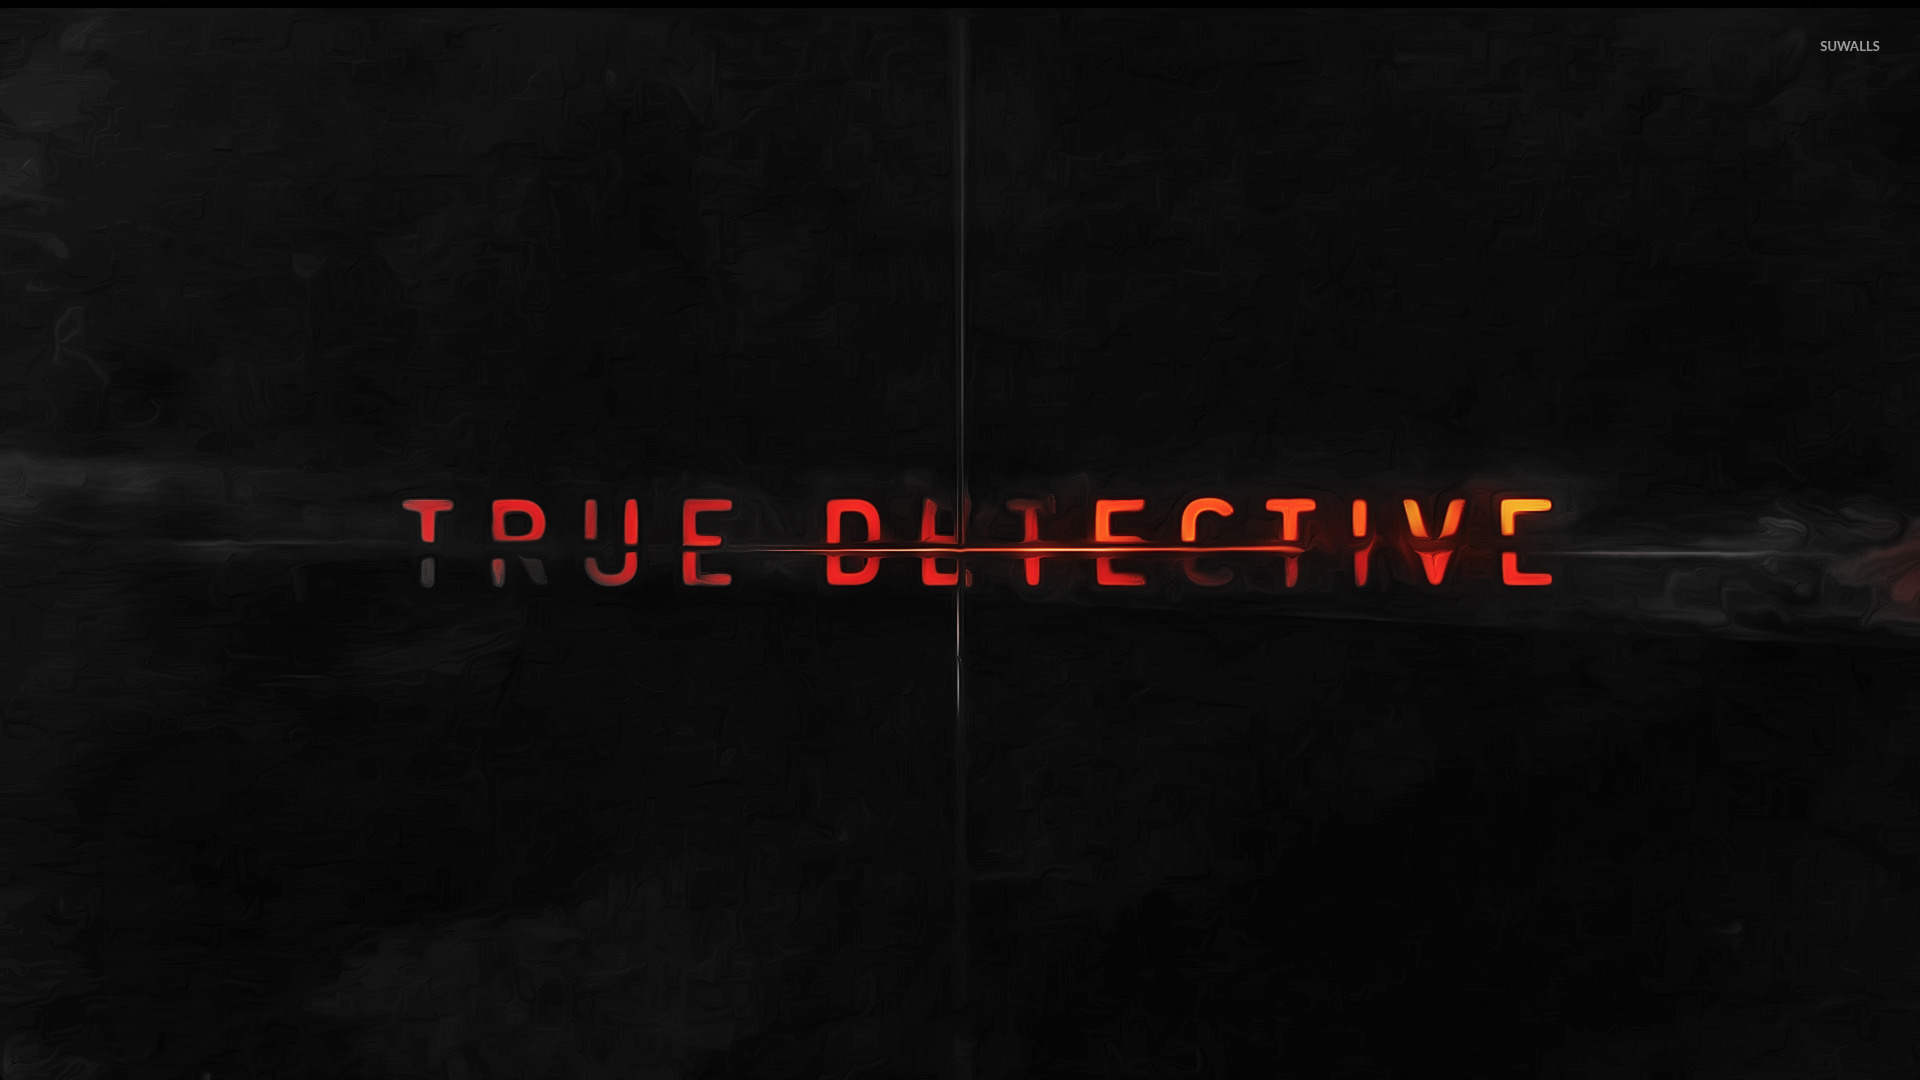 True Detective wallpaper - TV Show